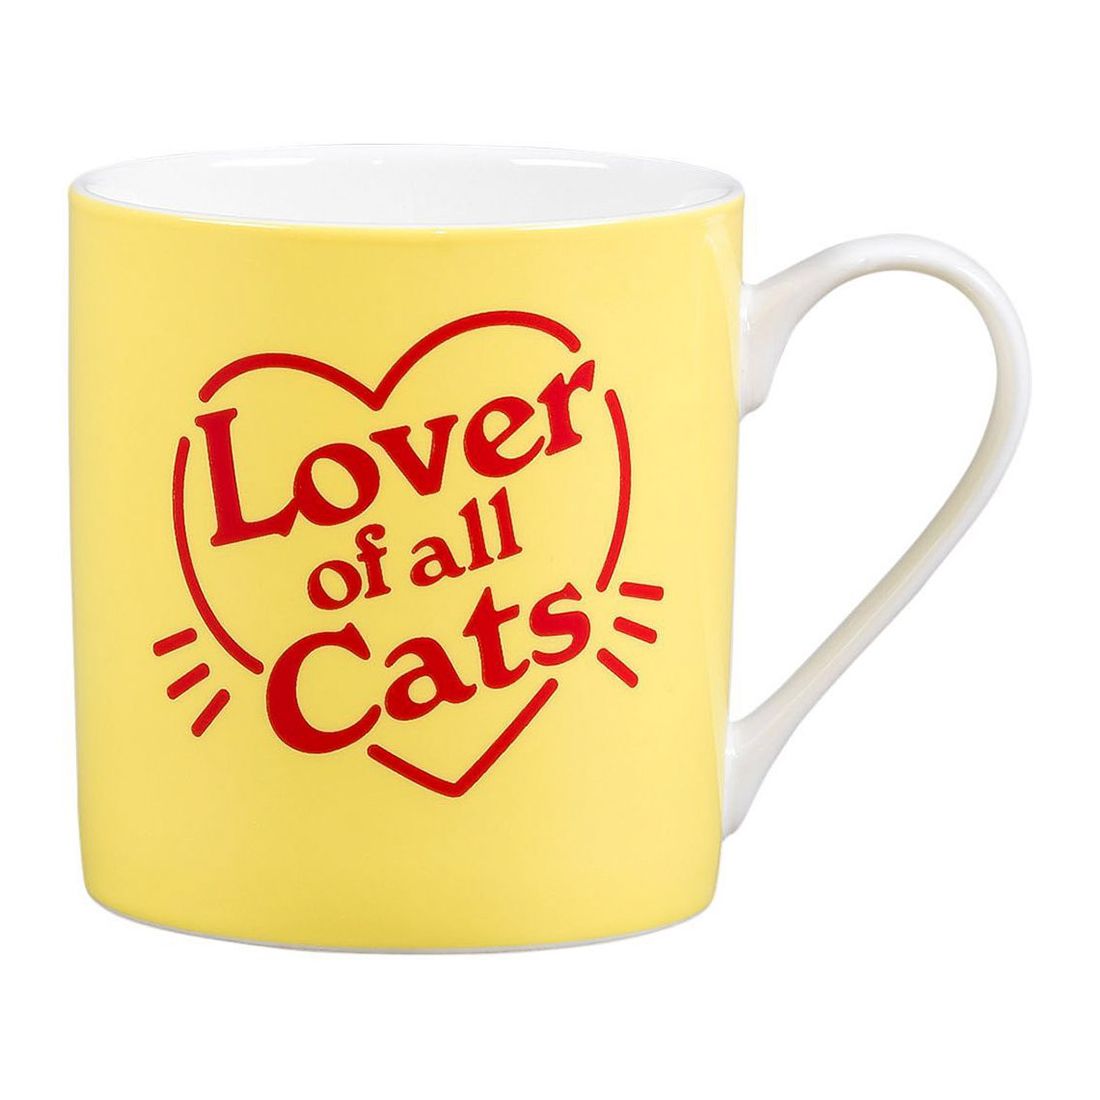 Yes Studio Cats Ceramic Mug 380ml